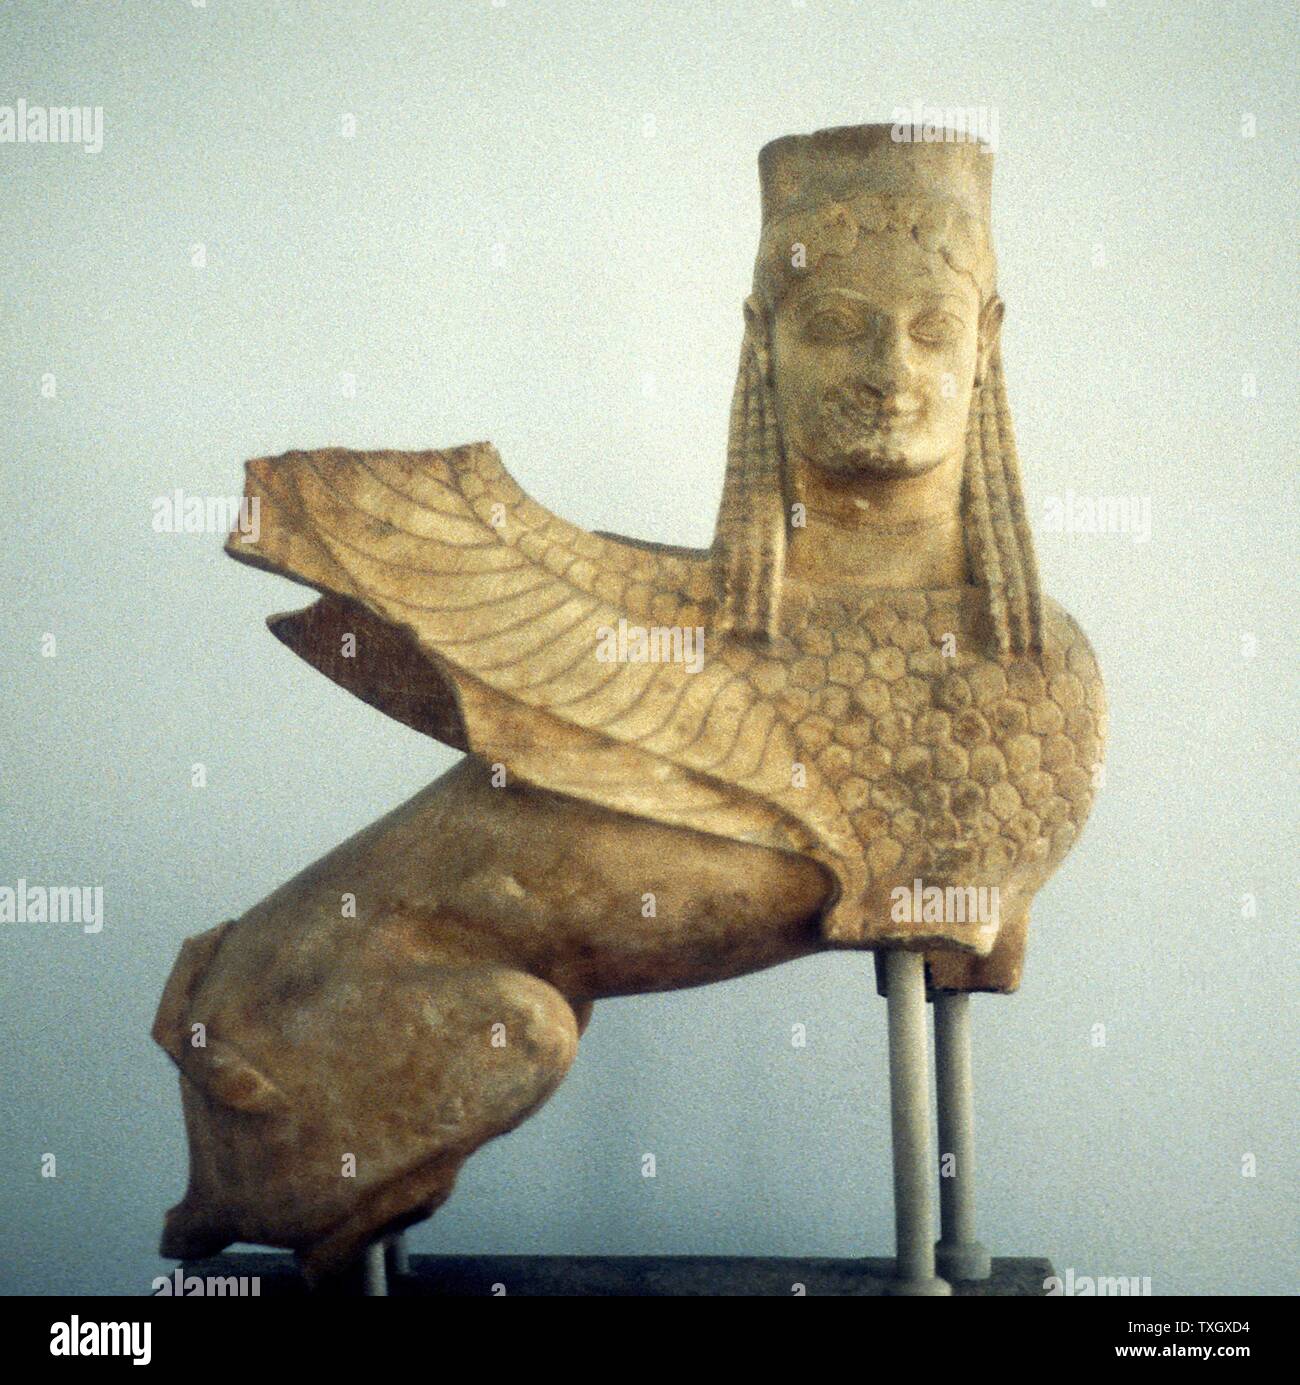 Sphinx de Sparte dans la mythologie grecque un sphinx était une femme monstre à tête humaine et corps de lion. Il pose des devinettes et tué des gens qui ne pouvaient pas répondre. Musée d'Athènes Banque D'Images